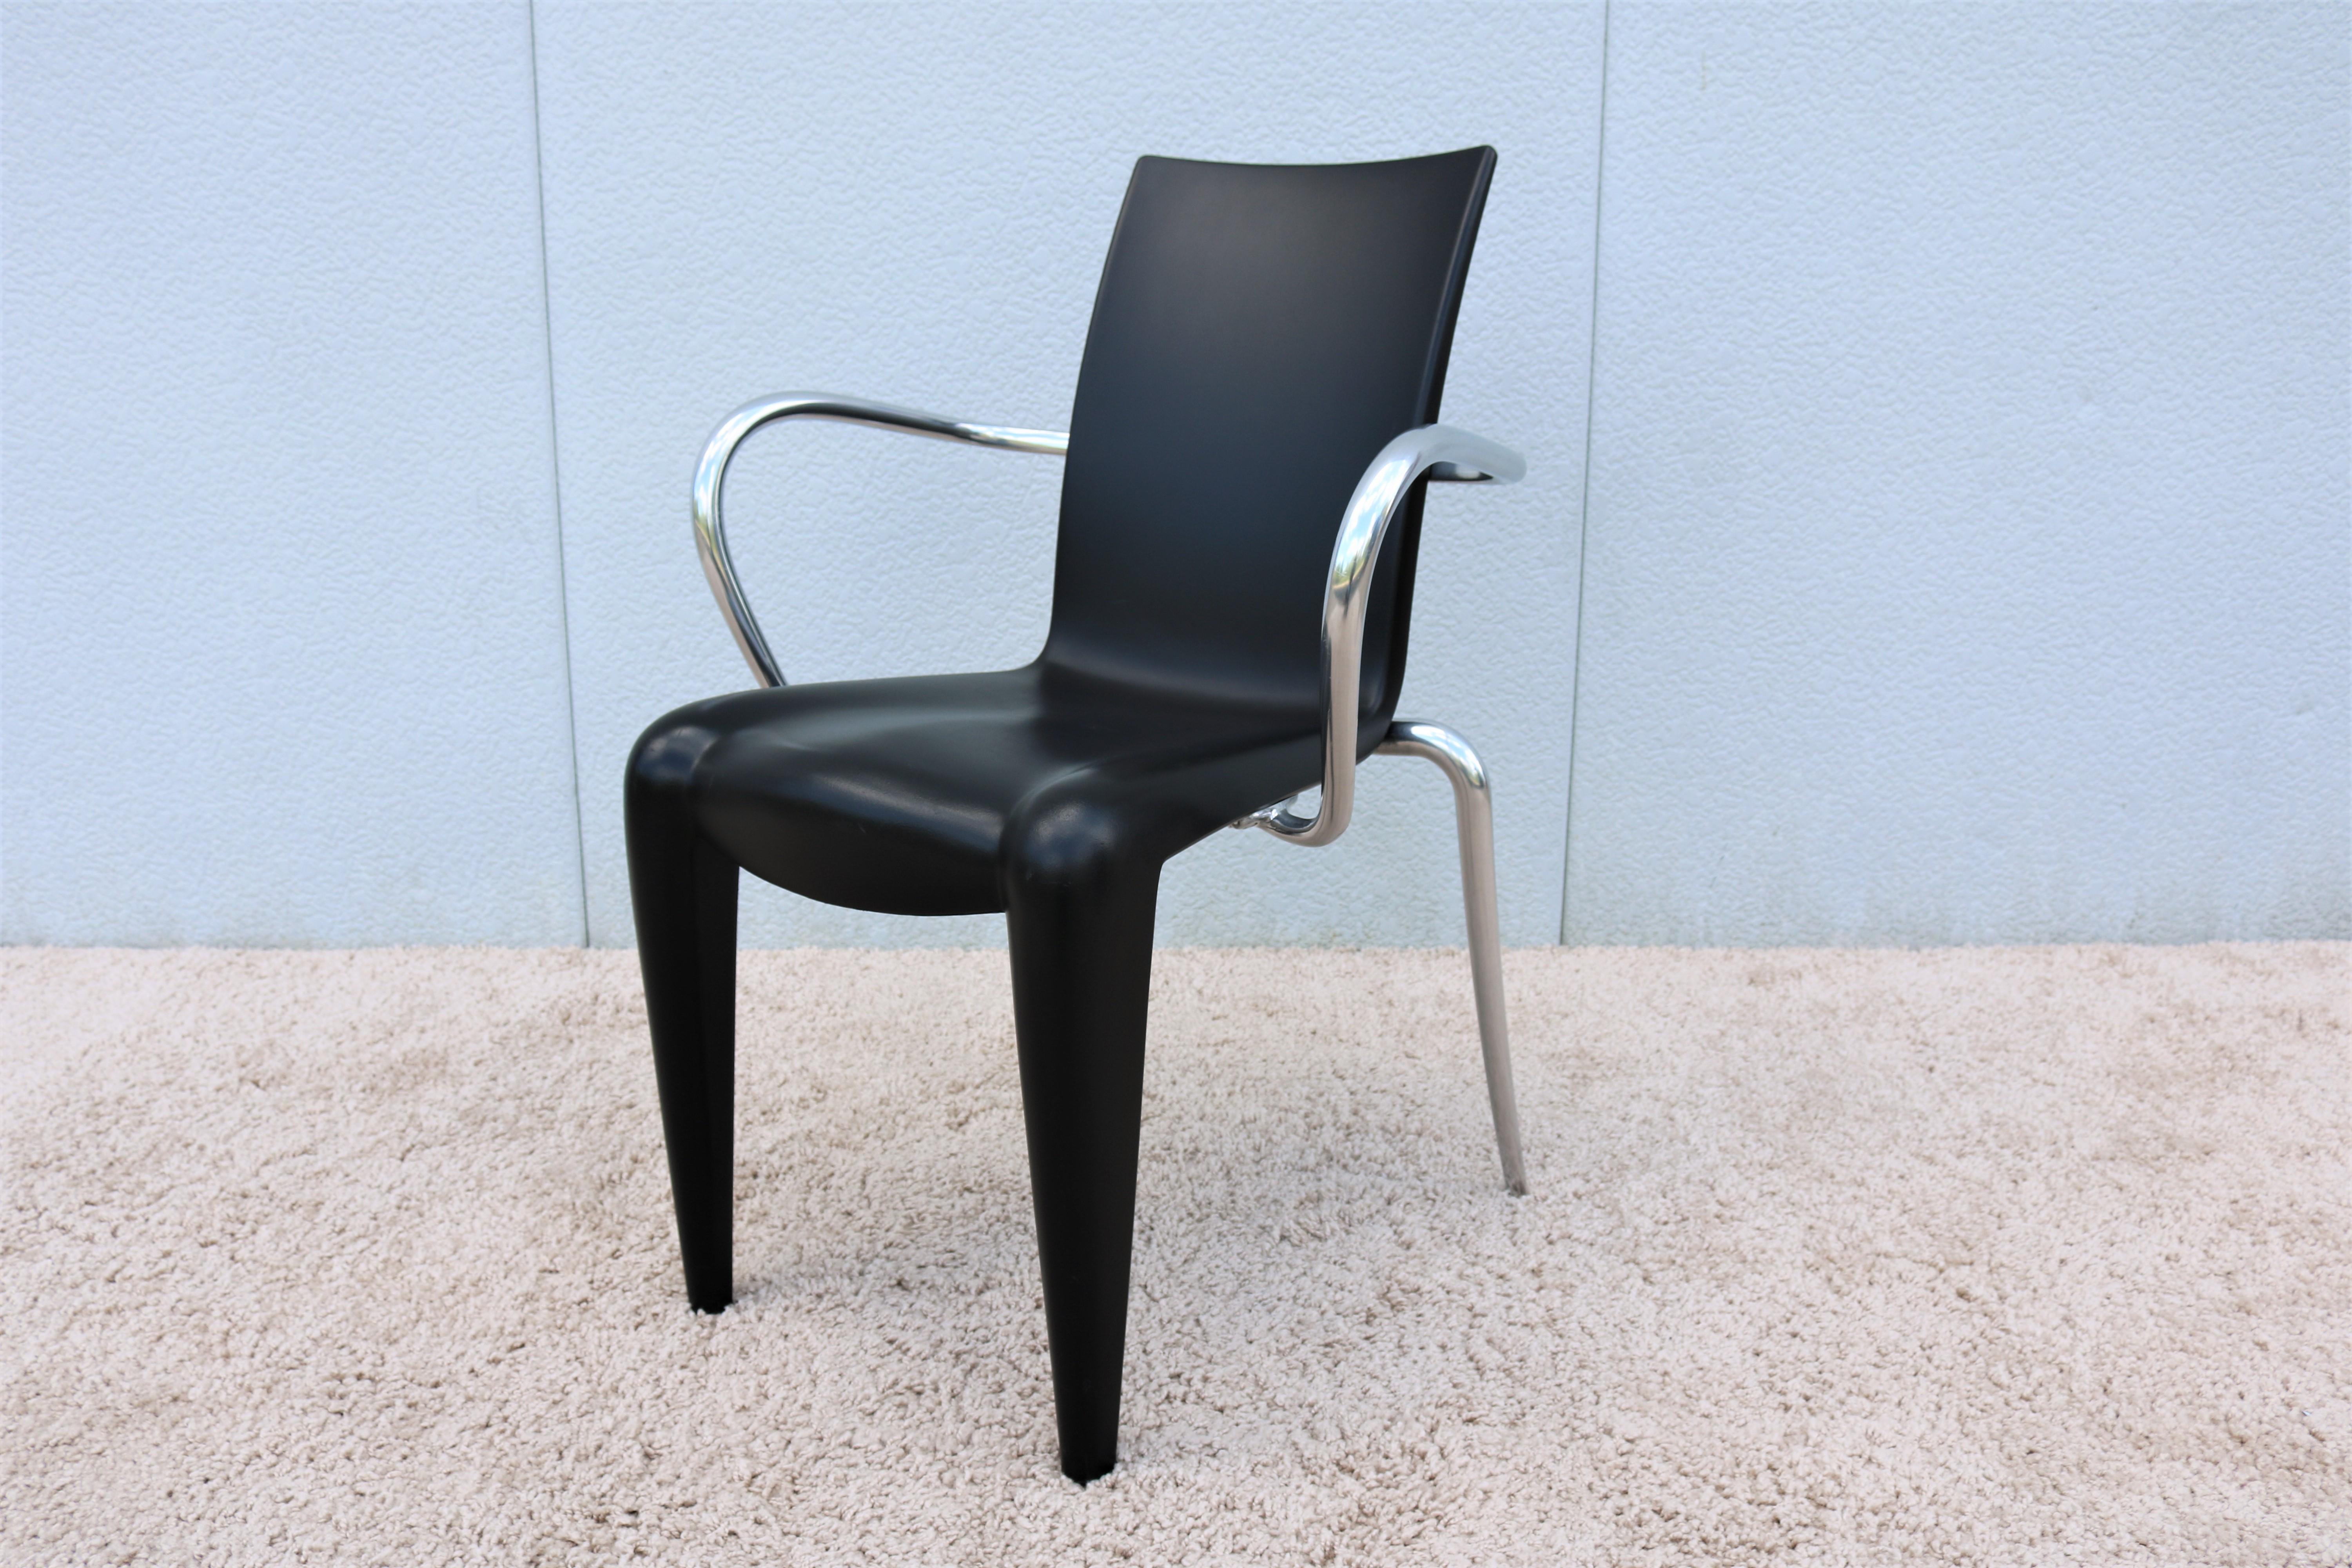 Philippe Starck gilt als die führende französische Persönlichkeit im Bereich des neuen Designs in den achtziger Jahren.
1991 entwarf er den Stuhl Louis 20 mit der charakteristischen Starck-Frontkurve, die sinnlich ansprechende Formen hat.
Die